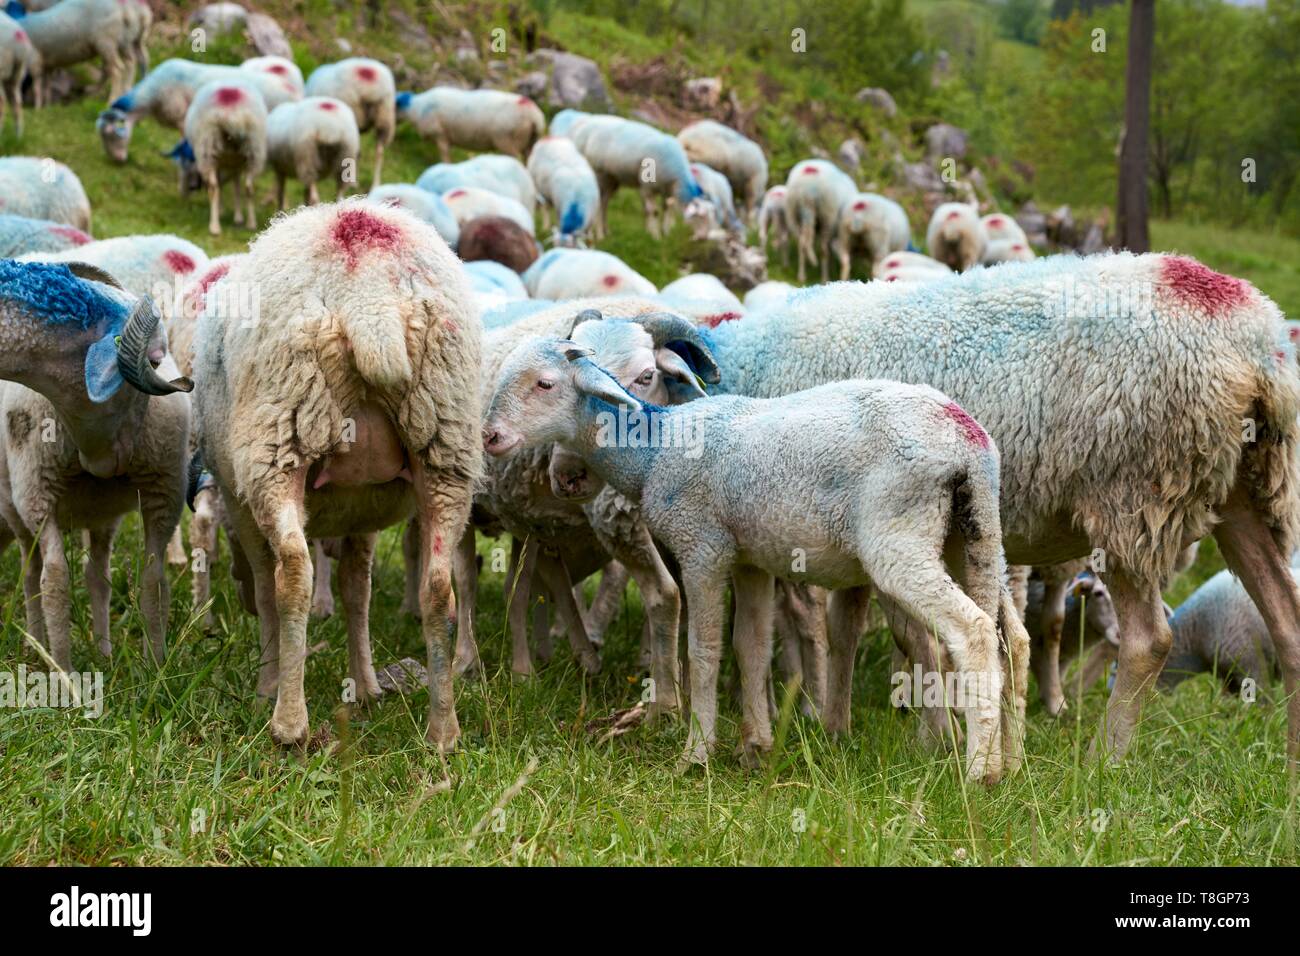 France, Hautes Pyrenees, Luz Saint Sauveur, Sheep raising Bareges Stock Photo